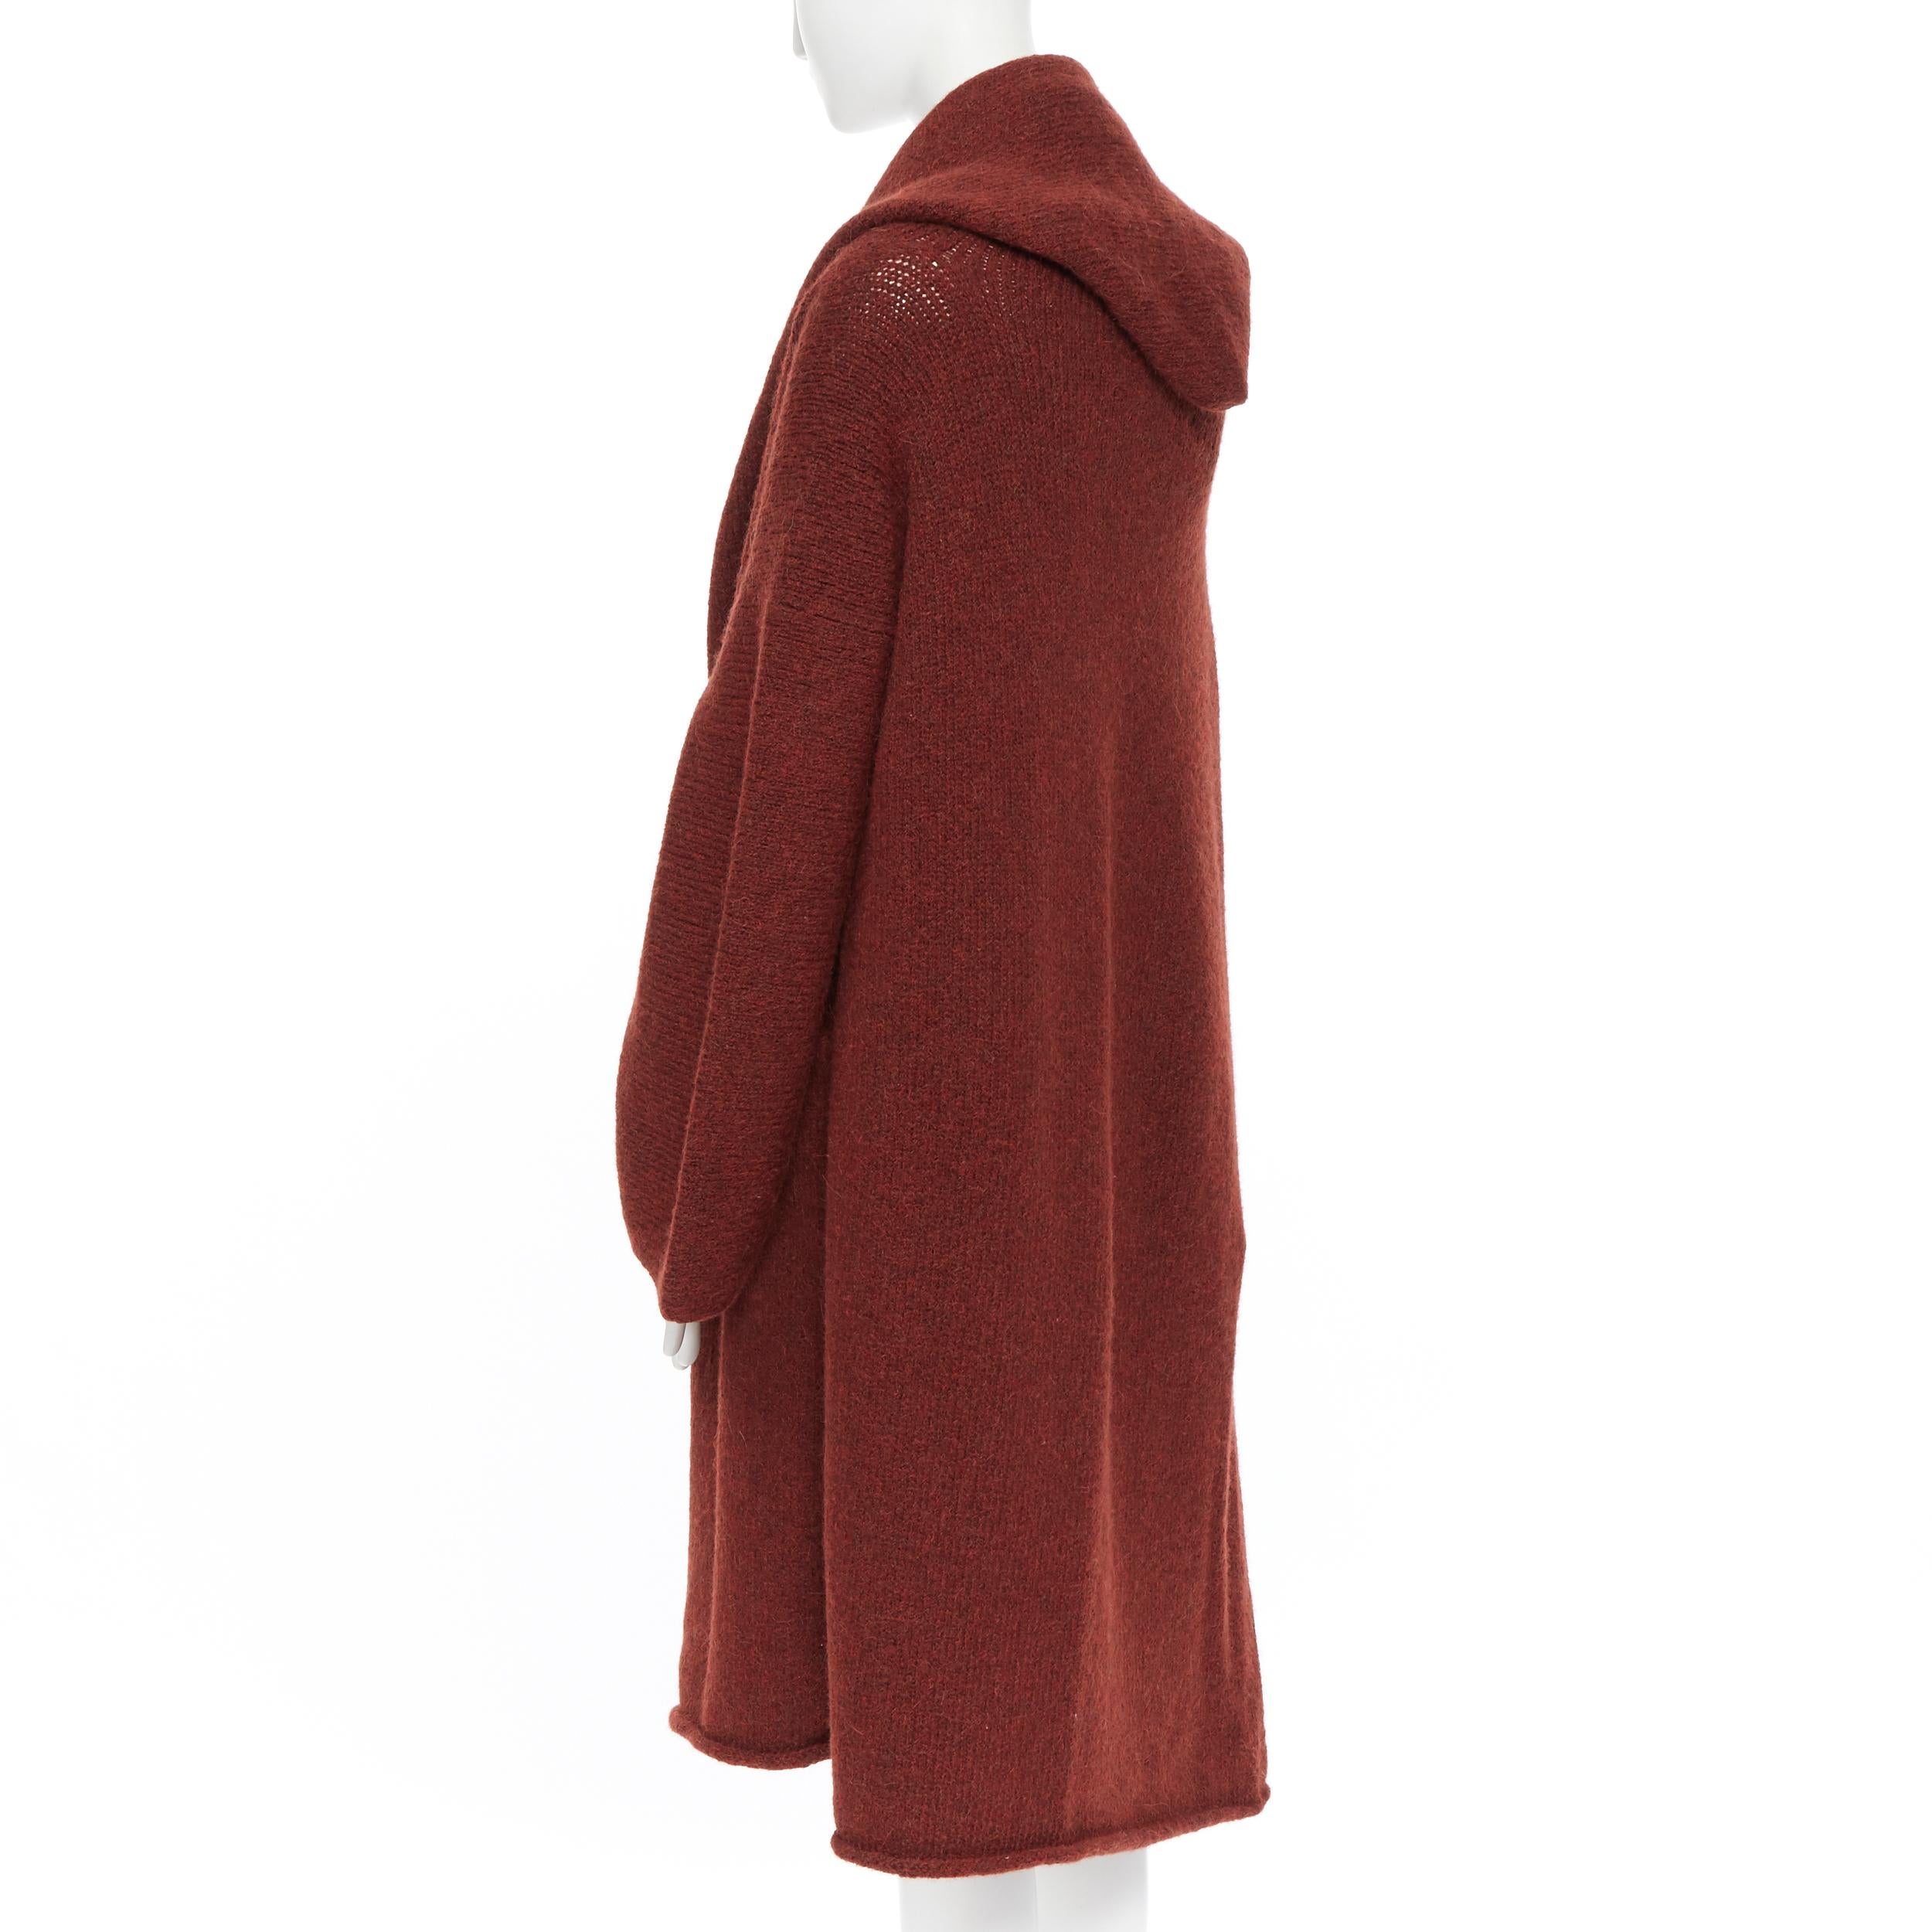 Women's LAUREN MANOOGIAN maroon brown hand loomed alpaca wool oversized coat cardigan